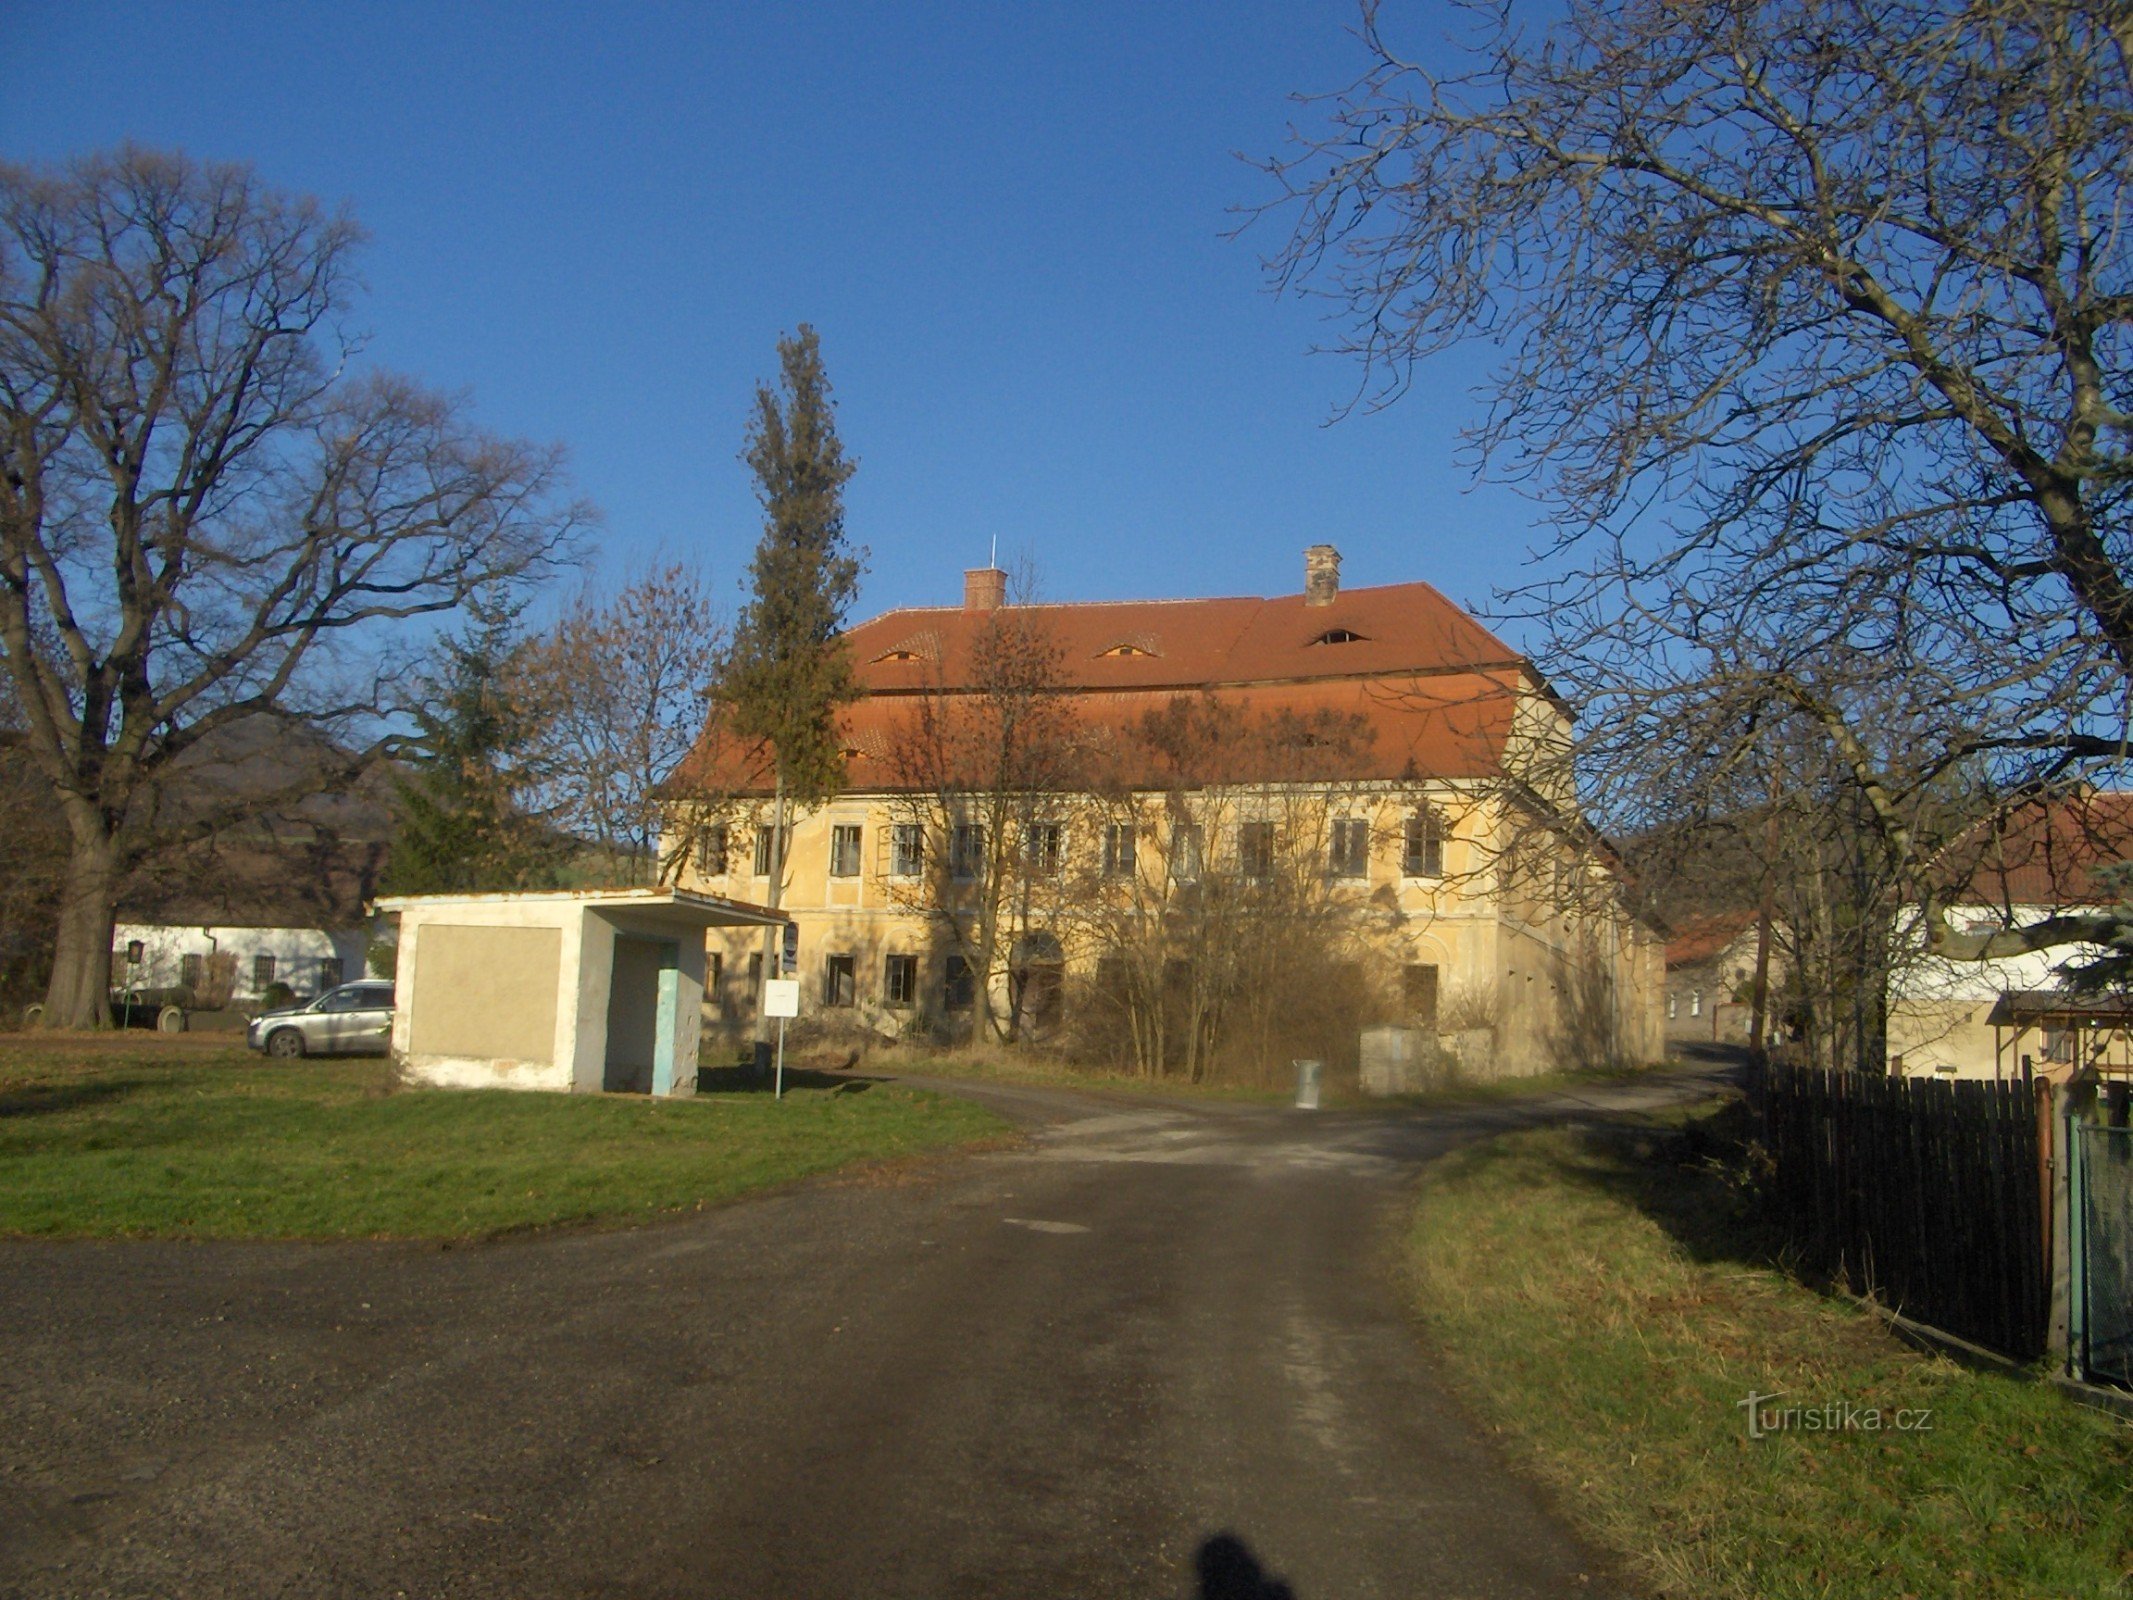 Dvorac Pnětluky